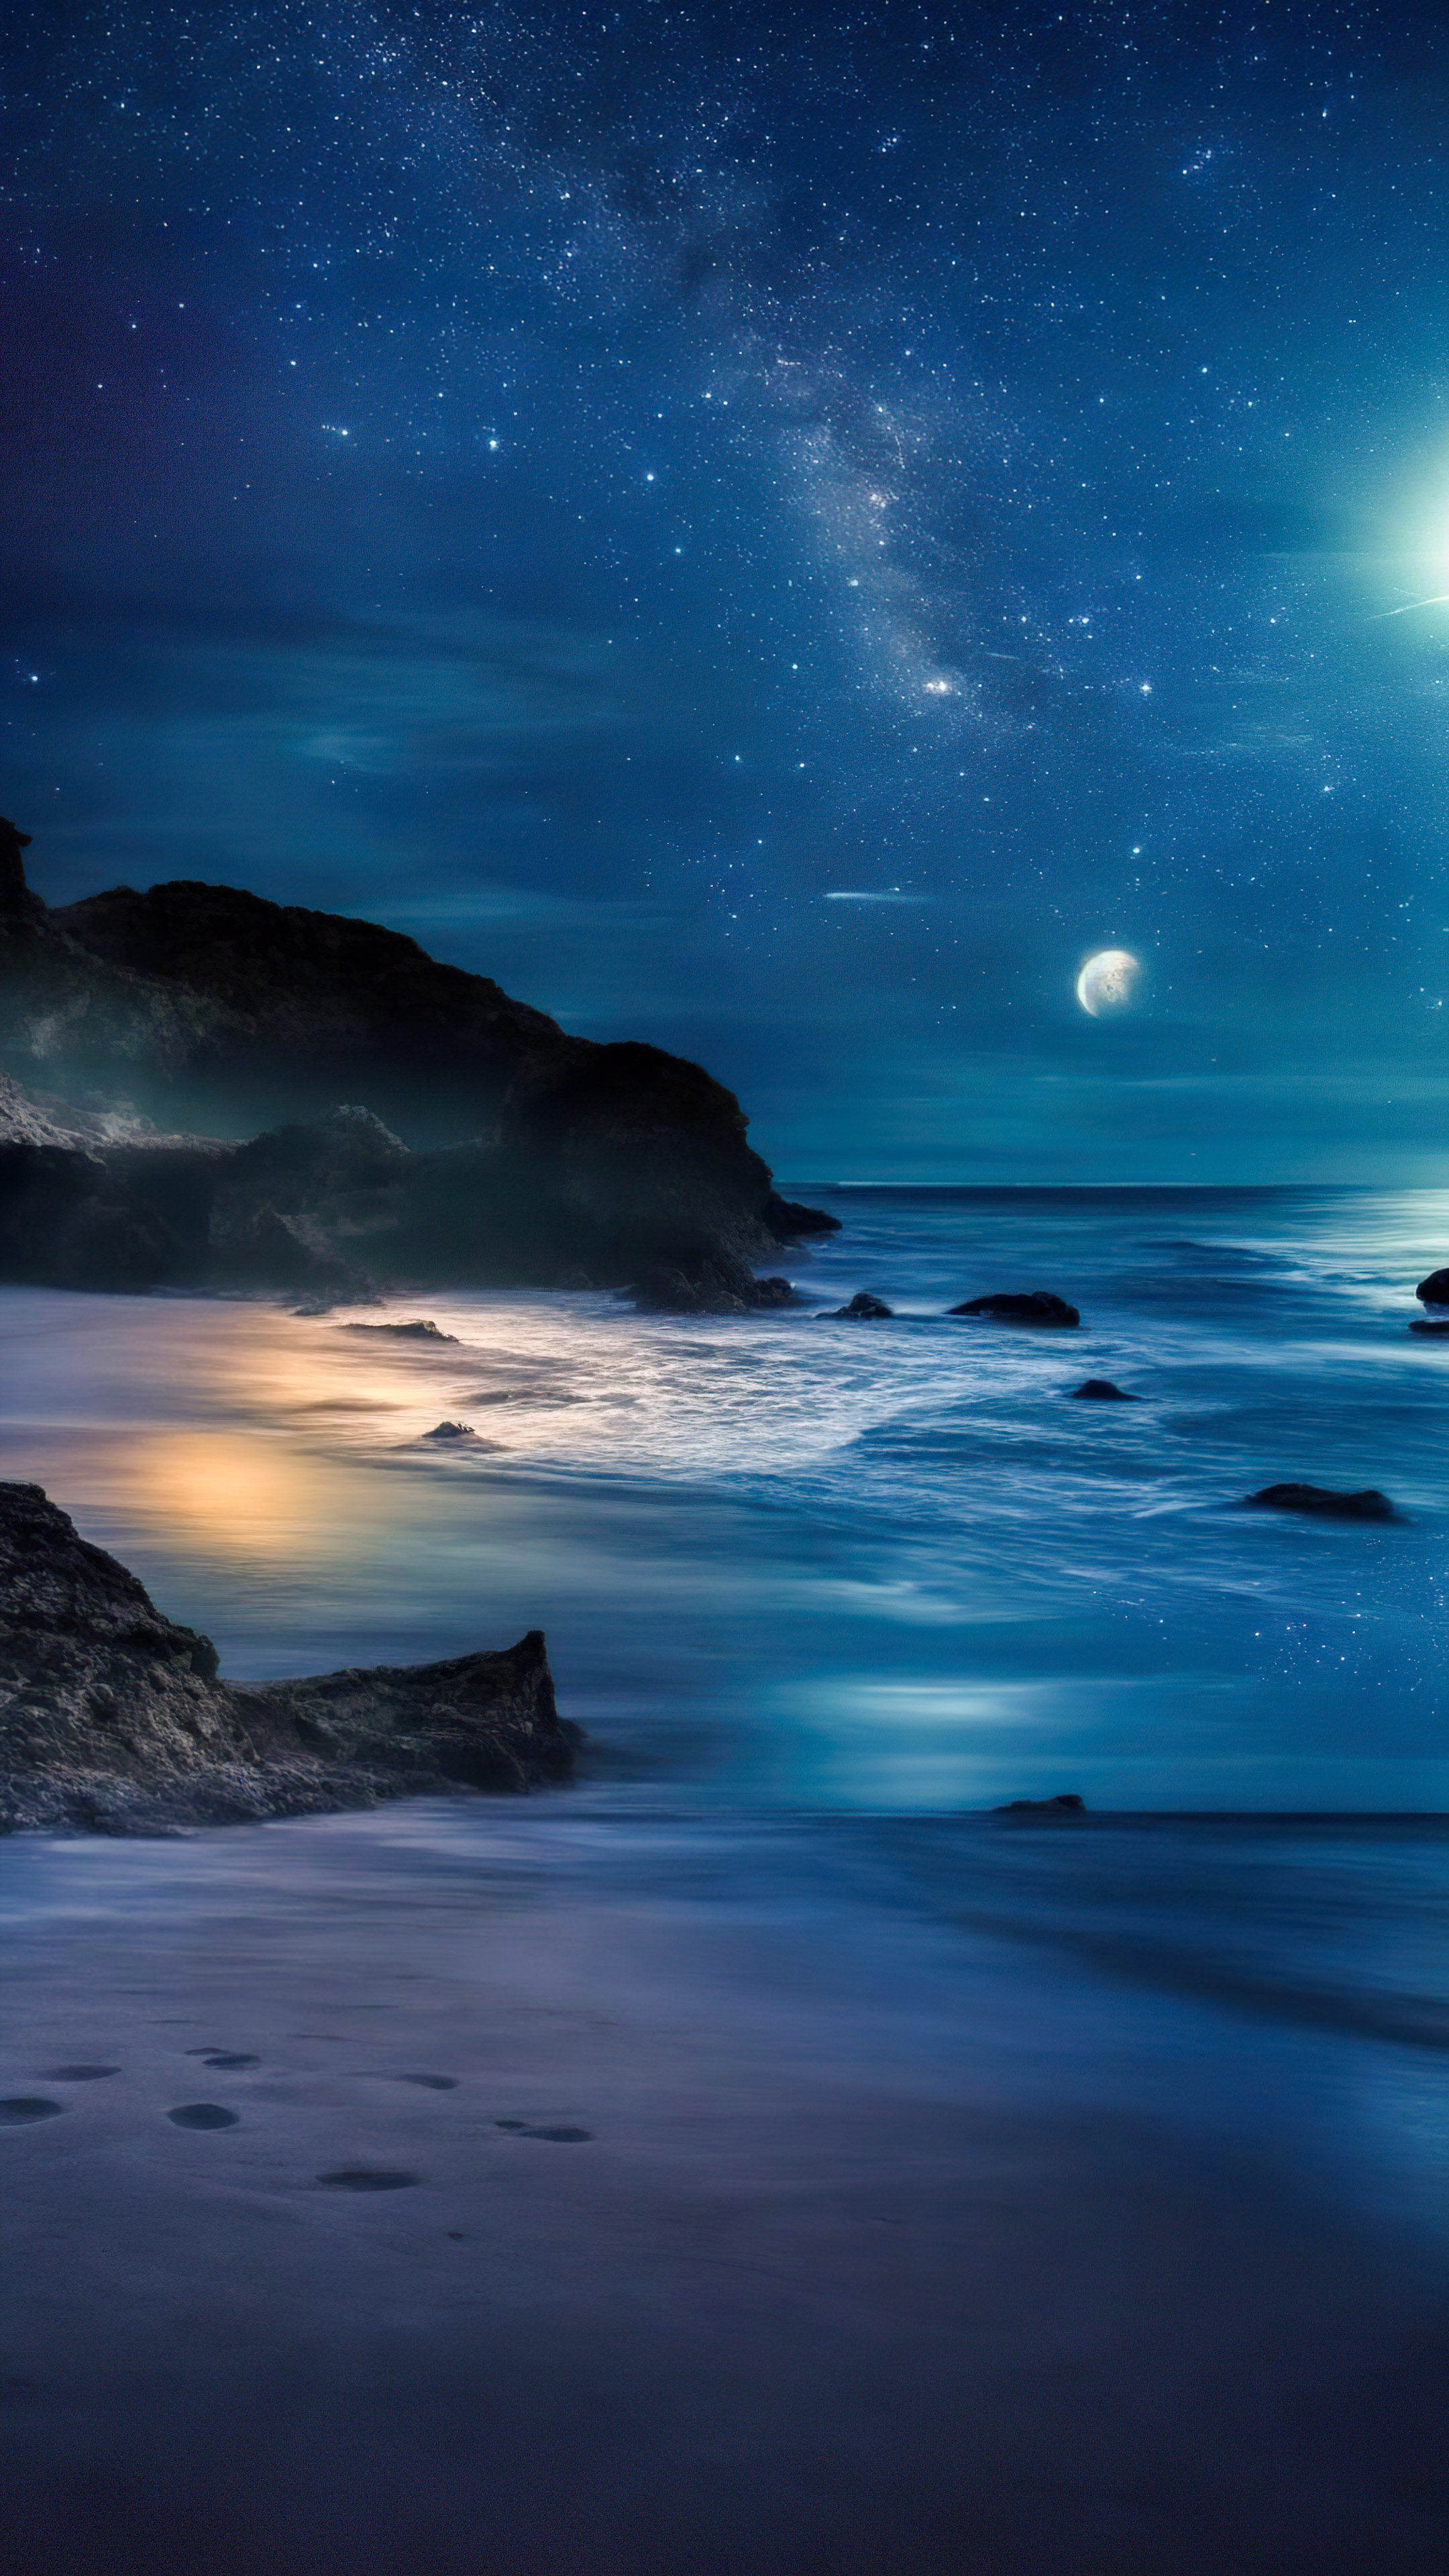 Transformez votre iPhone avec notre fond d'écran gratuit de beaux paysages, représentant une plage isolée la nuit, où les vagues rencontrent le rivage sous un ciel étoilé.